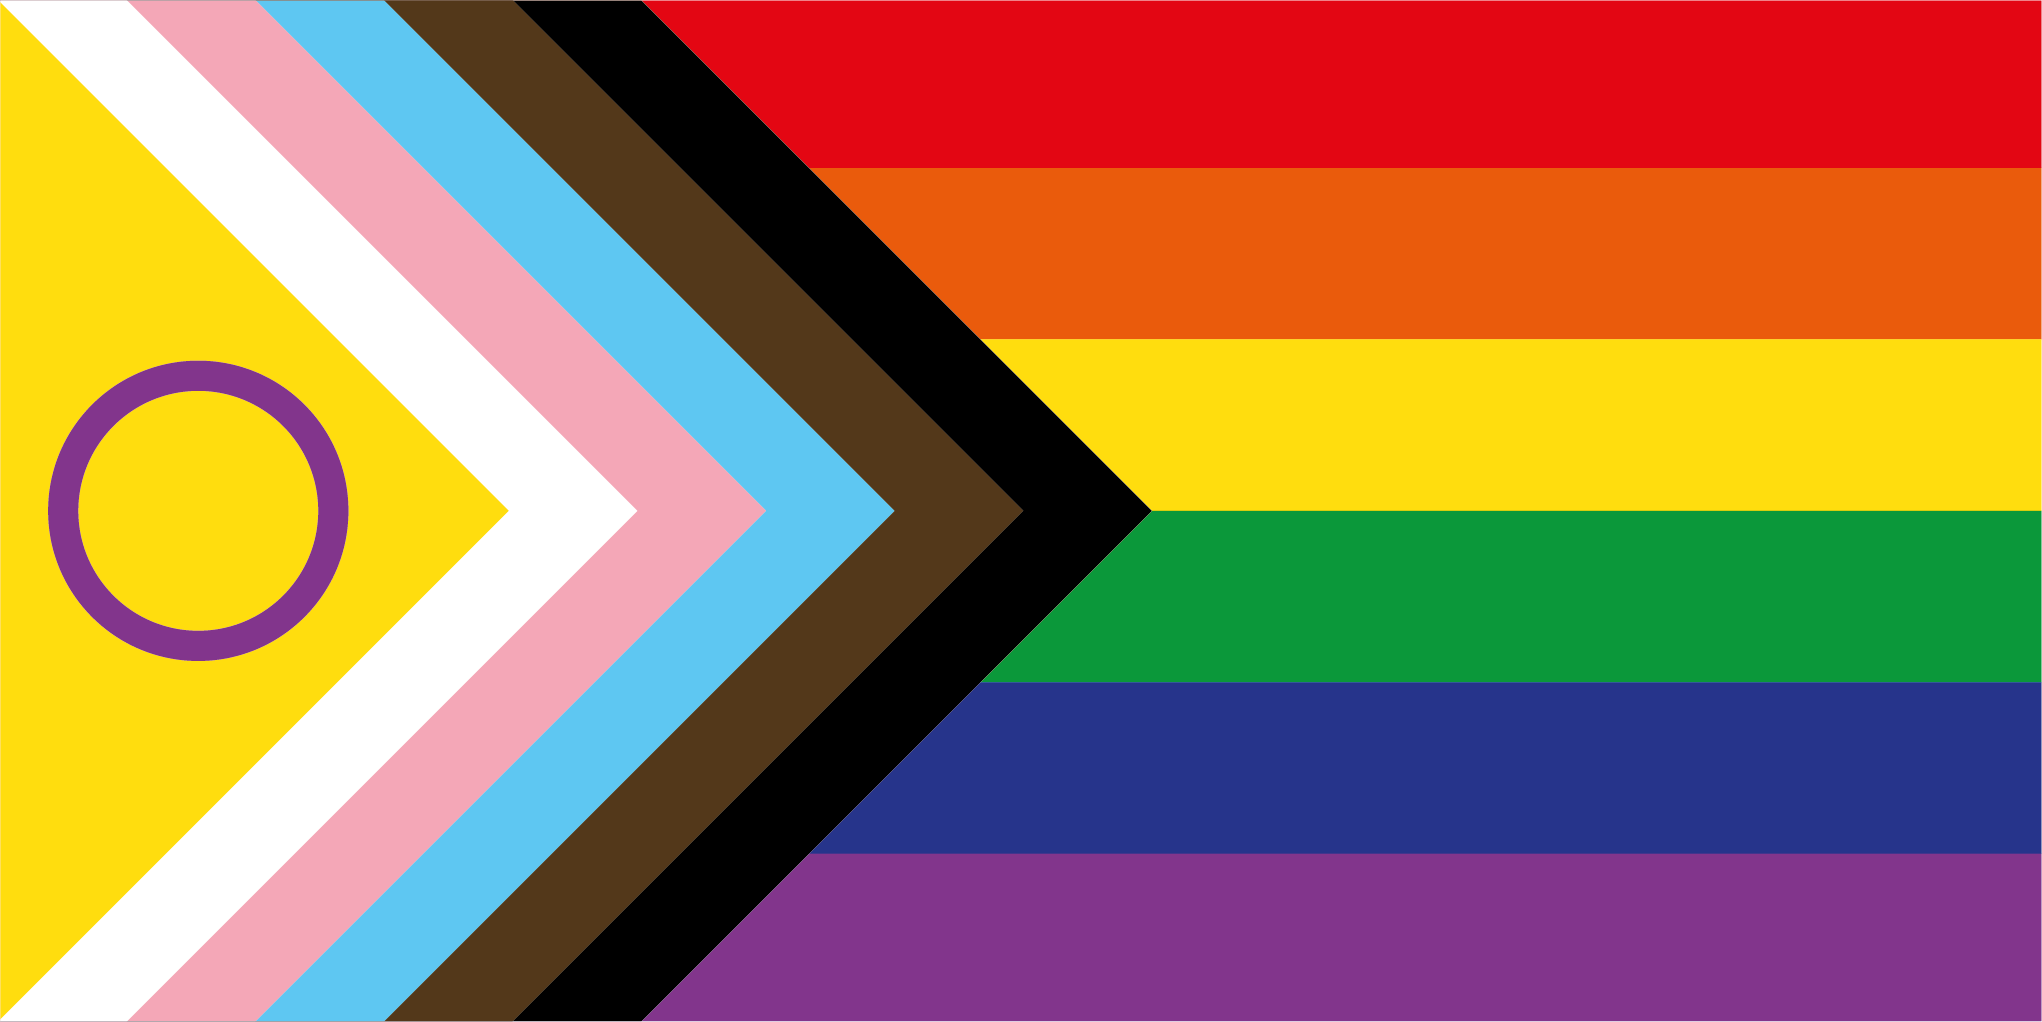 Die Regenbogenflagge - Tom for Dogs ist ein safe space für alle Menschen der LGBTQIA+ community"